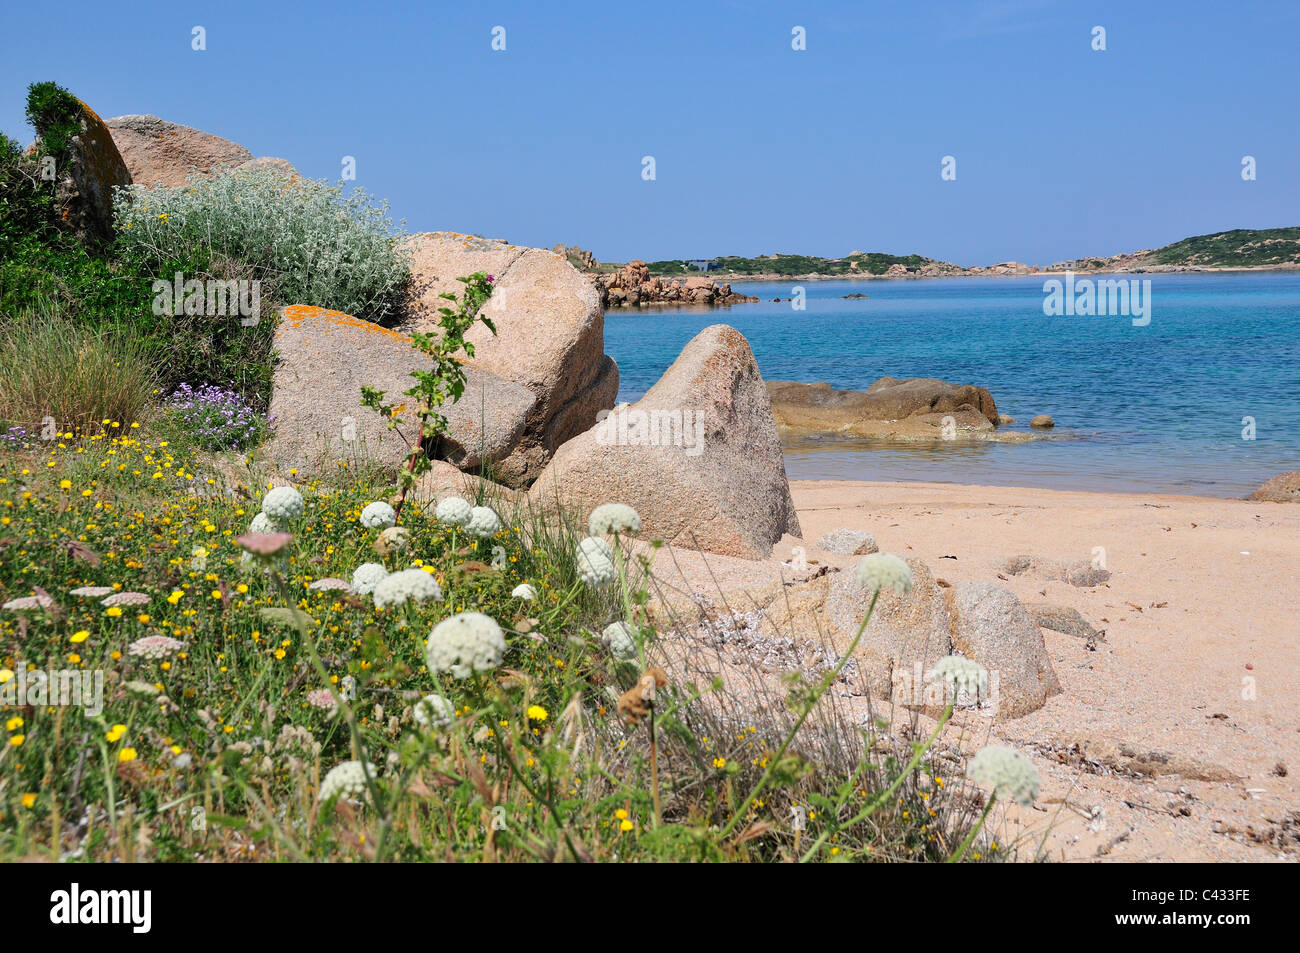 Typische Bucht und Strand mit Felsen und Blumen am nördlichen Ende der Insel Maddalena, Archipel Maddalena, Sardinien, Italien Stockfoto